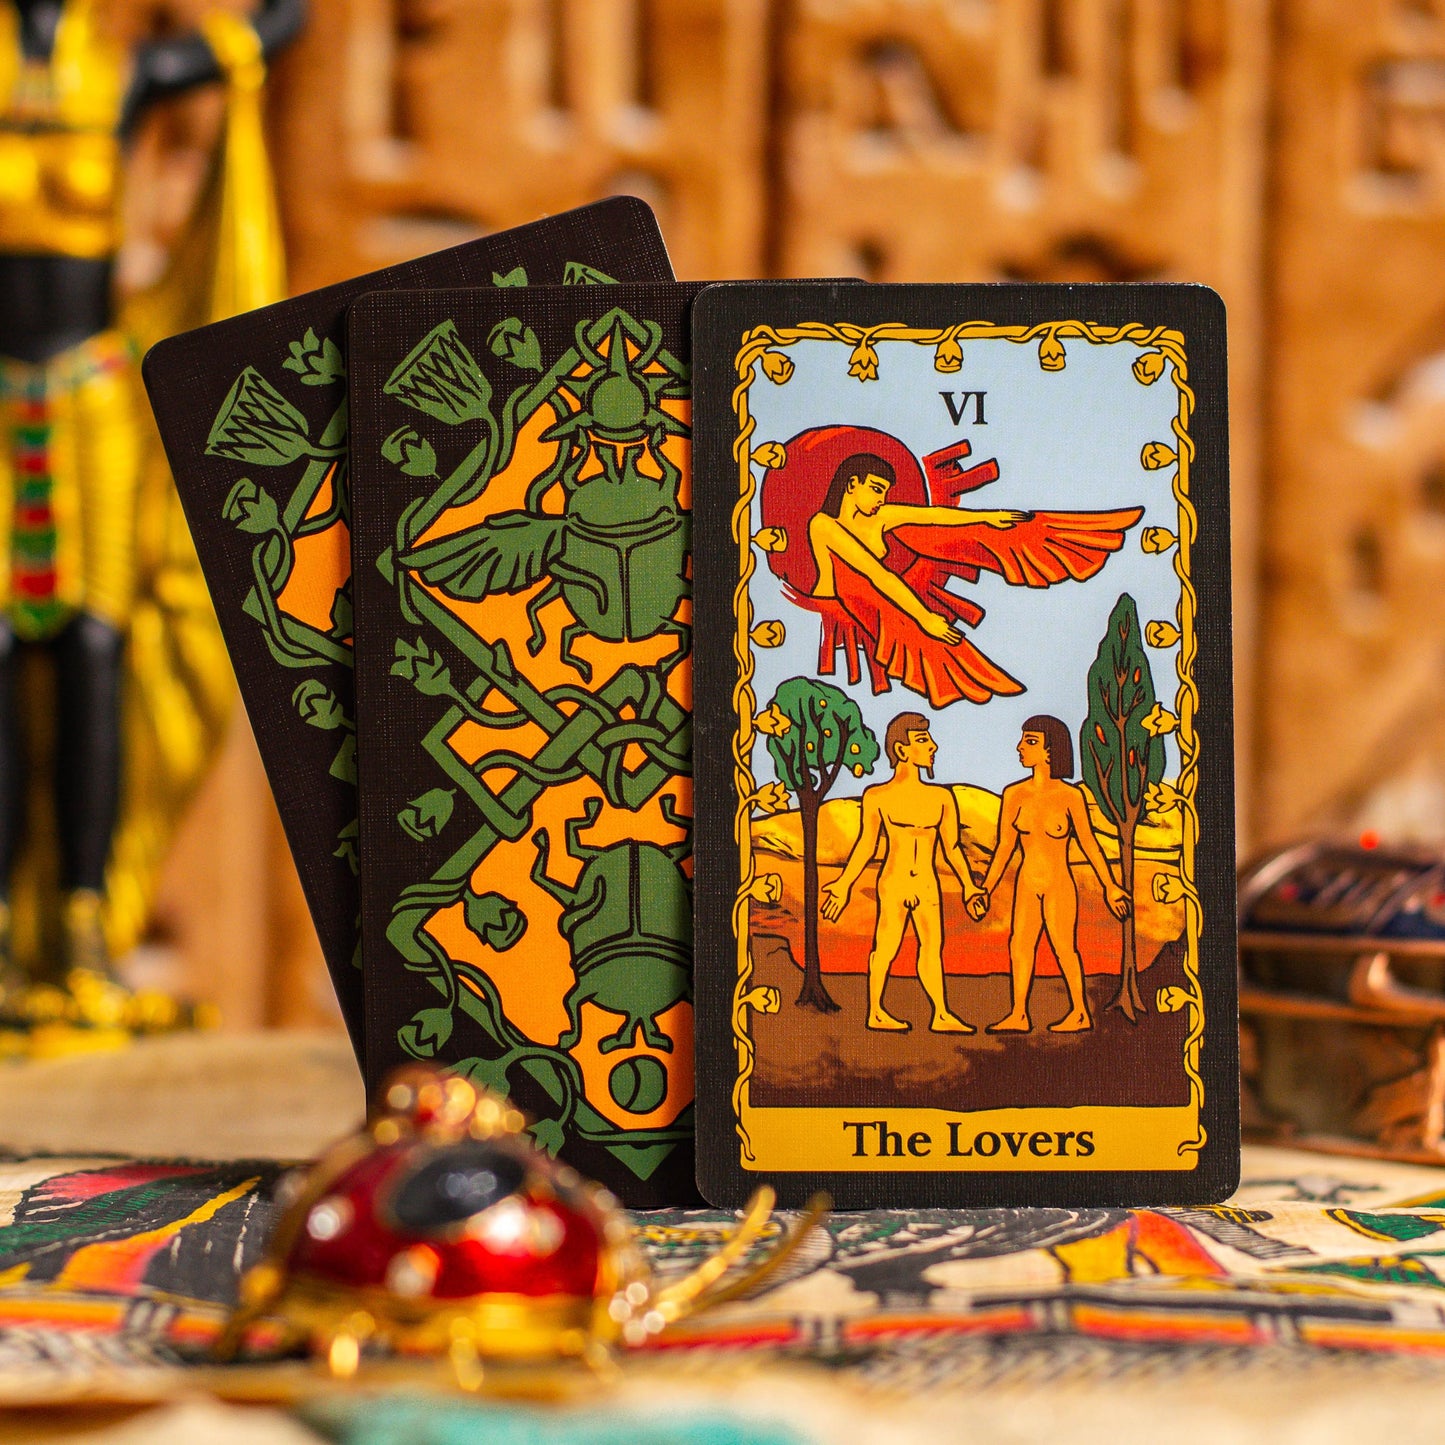 Tarot of The Nile Modern Tarot Cards Deck